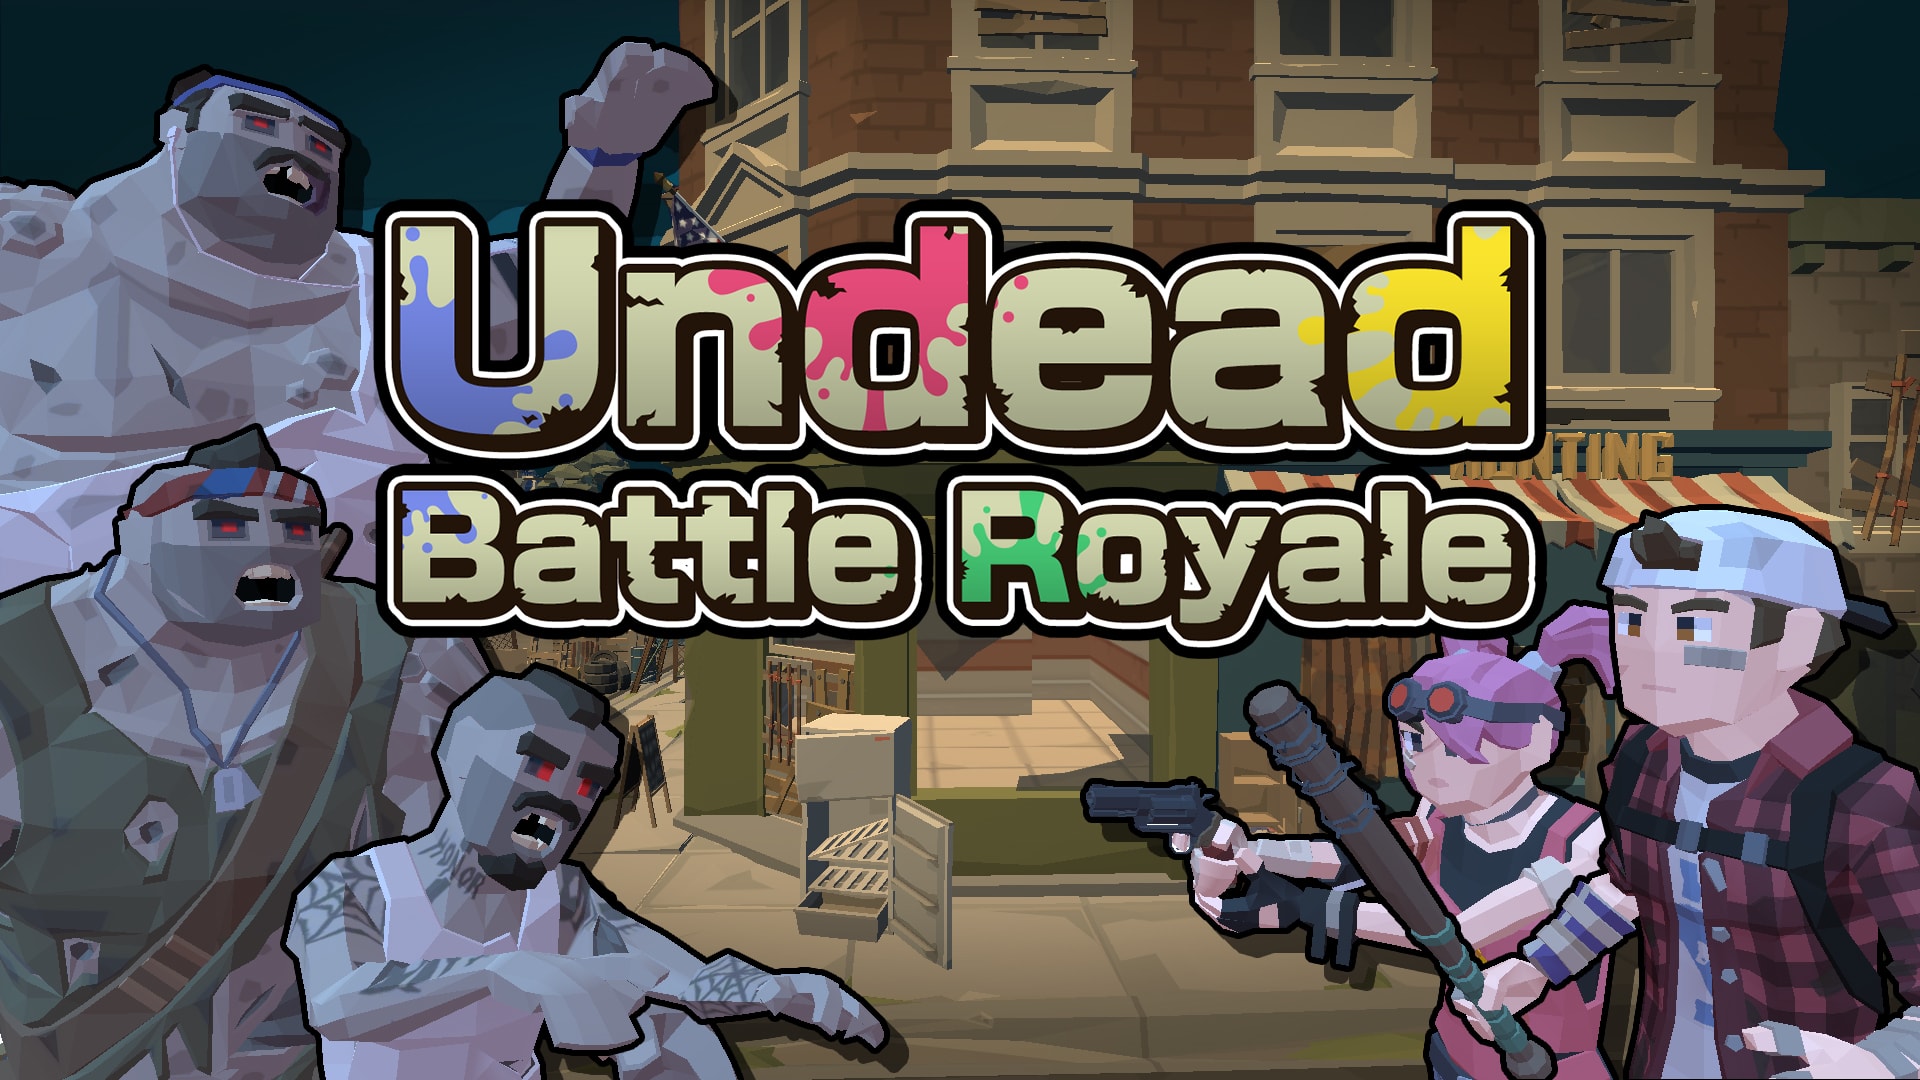 Undead Battle Royale